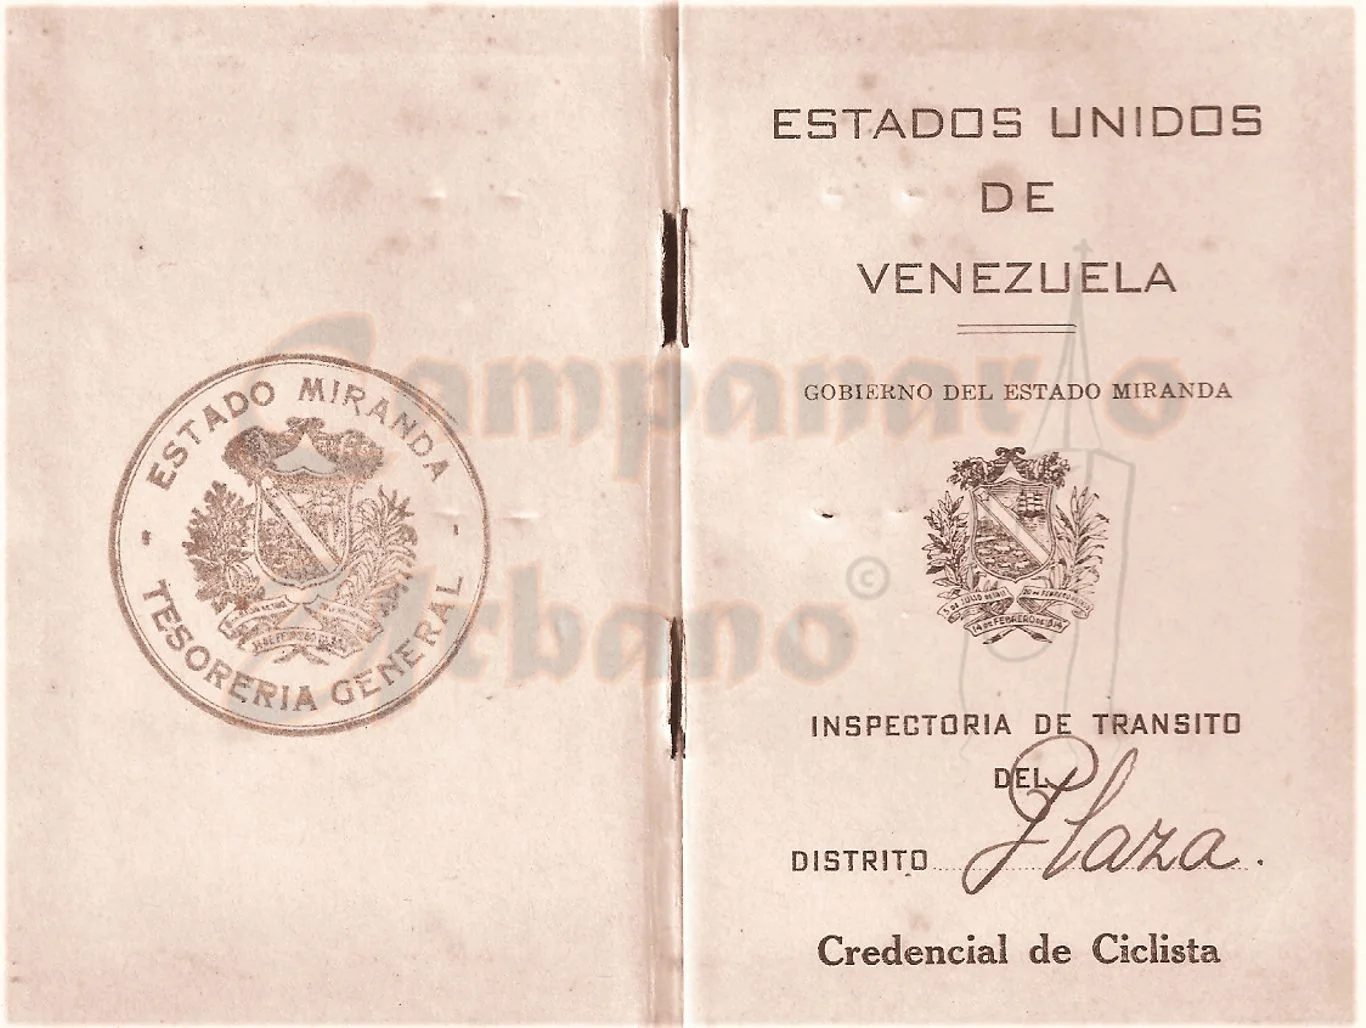 Credencial de ciclista para poder manejar la bicicleta en Guarenas, emitida por los Estados Unidos de Venezuela, Gobierno del Estado Miranda, Inspectoría de Tránsito del Distrito Plaza en Guarenas, 20 de junio de 1950